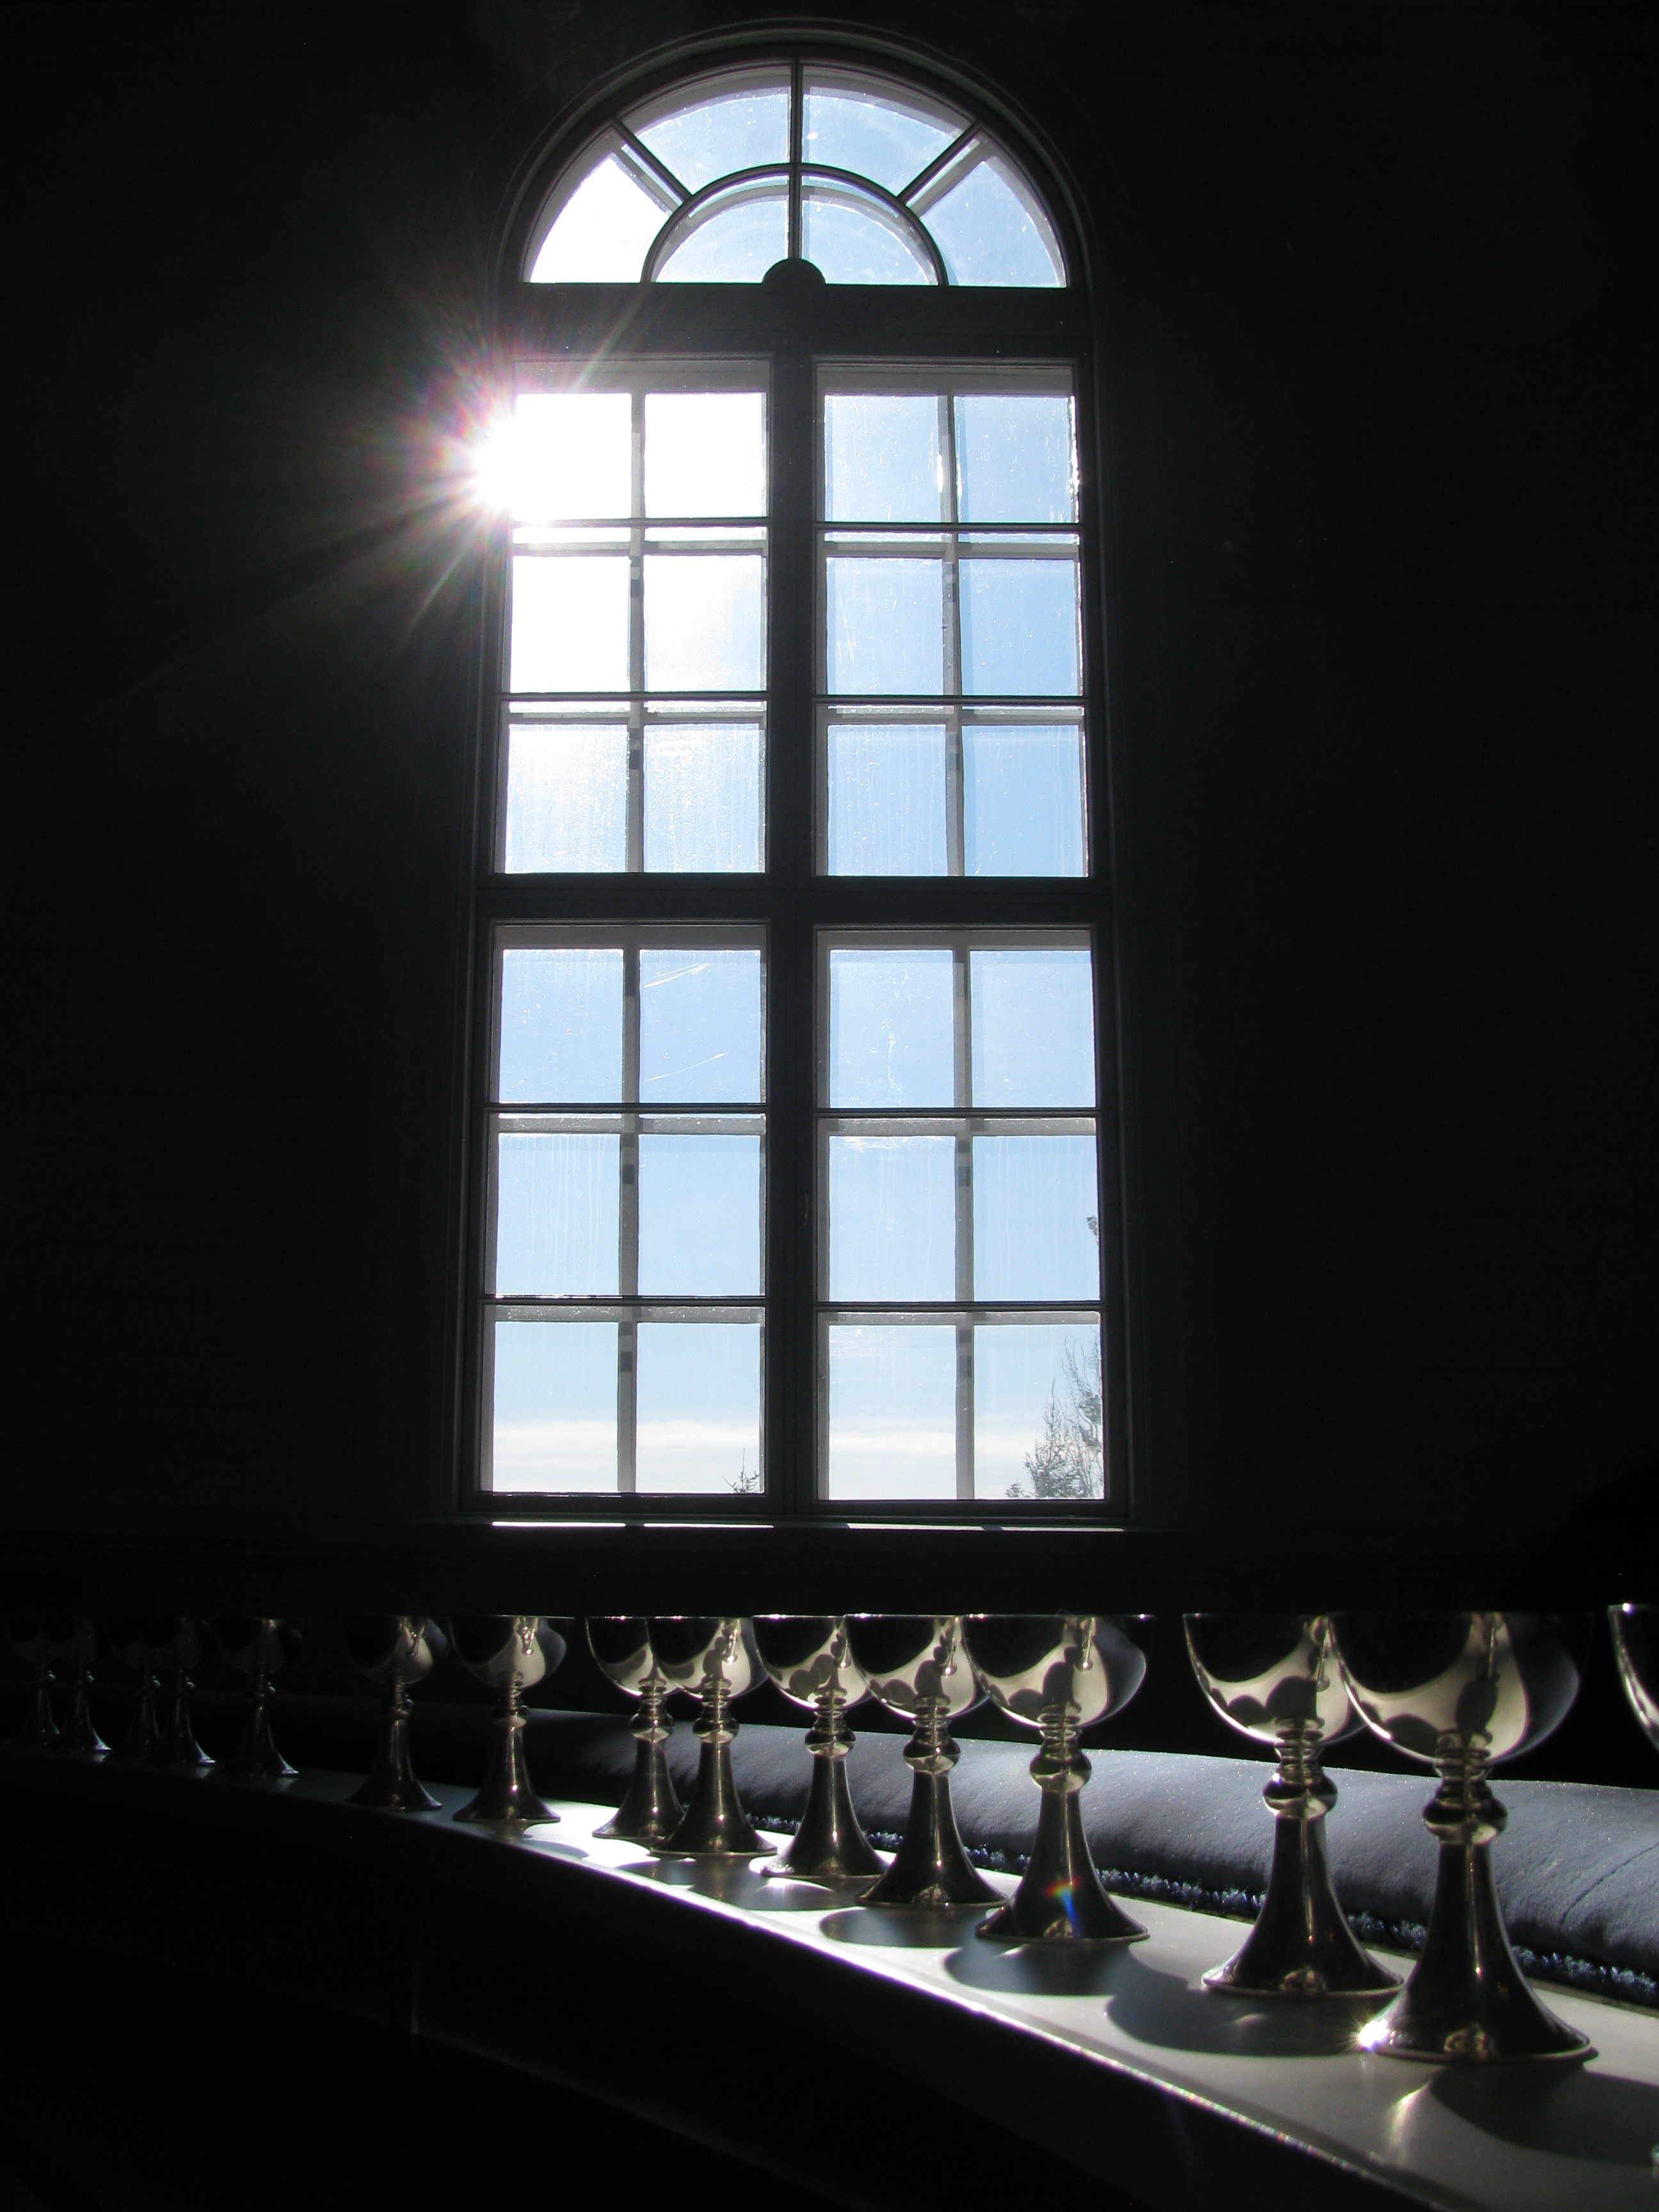 Kuvassa ehtoollispikareita alttarikaiteella. Pikareihin osuu auringonvalo ikkunasta.